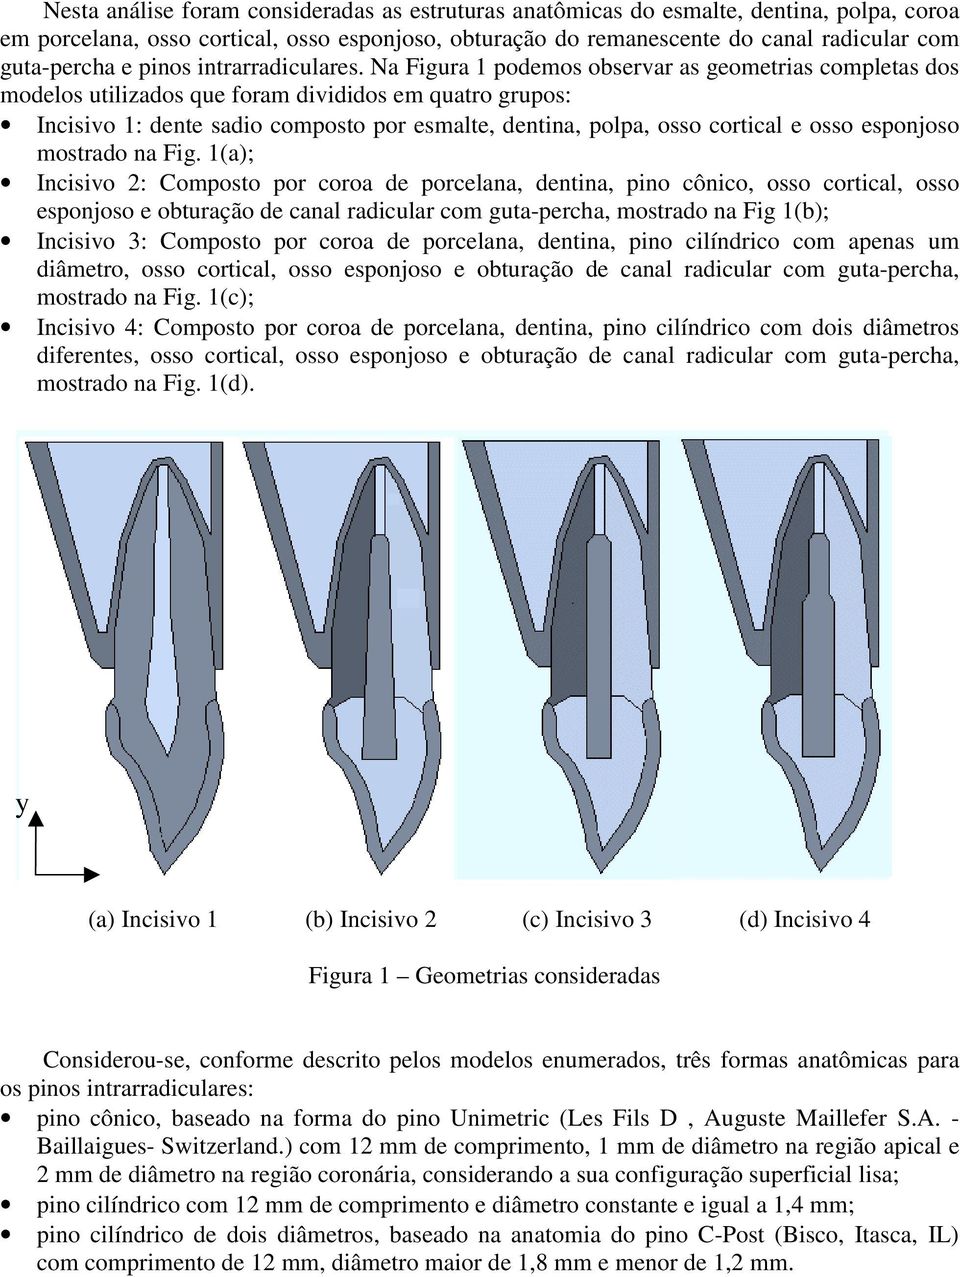 Na Figura 1 podemos observar as geometrias completas dos modelos utilizados que foram divididos em quatro grupos: Incisivo 1: dente sadio composto por esmalte, dentina, polpa, osso cortical e osso